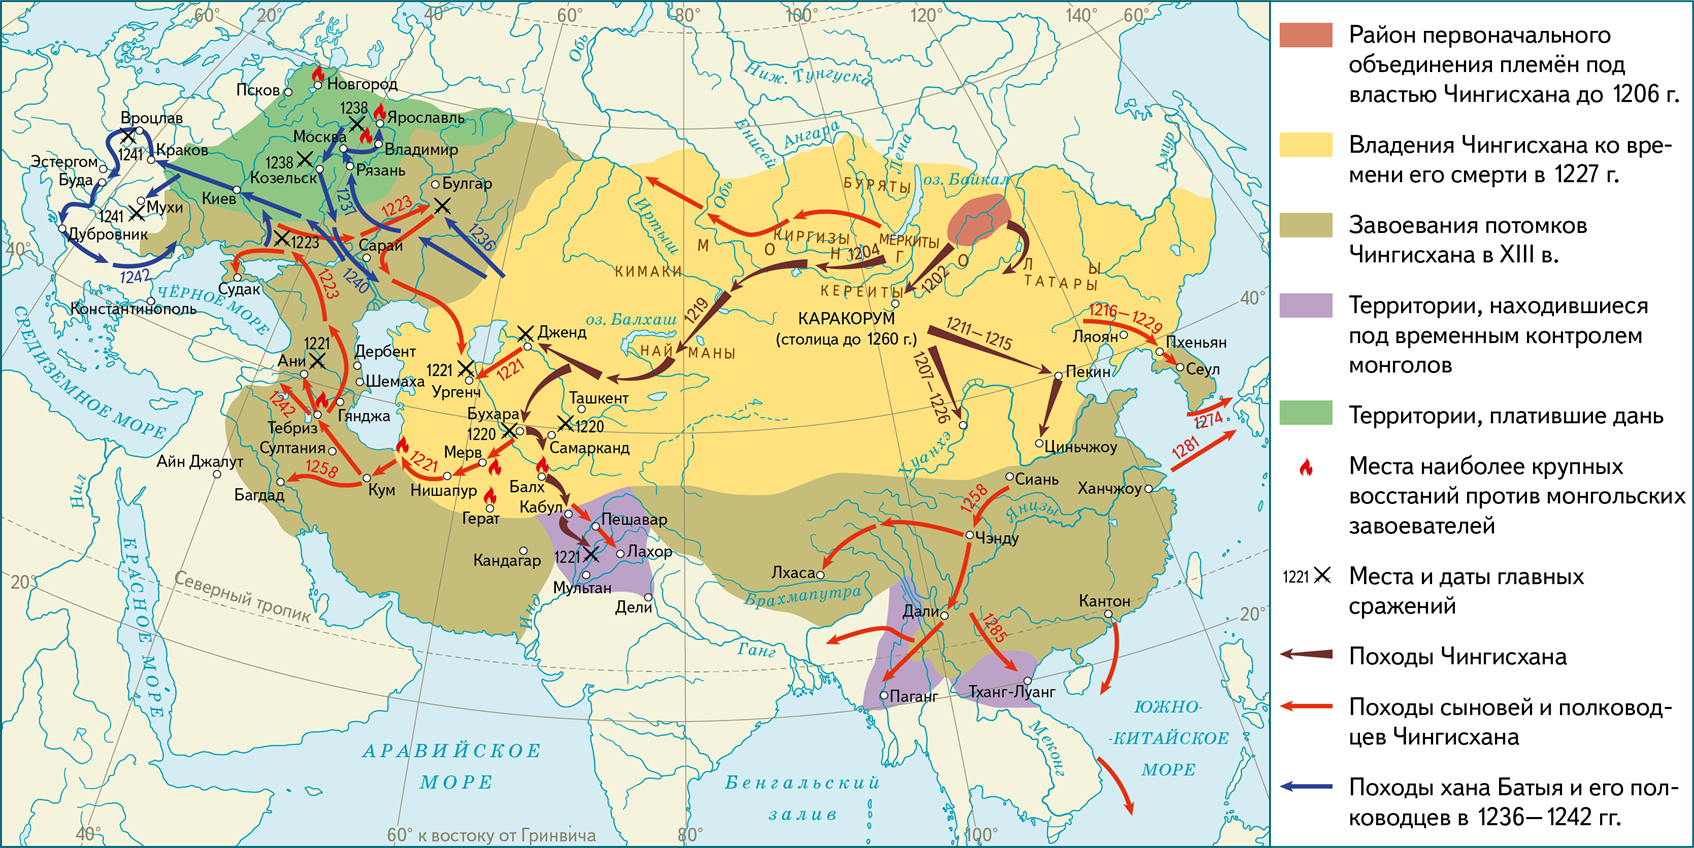 Ближайшая хана. Завоевательные походы Чингисхана карта. Монгольская Империя 12 век. Монгольская Империя Чингисхана карта. Монгольские завоевания Чингисхана на карте.